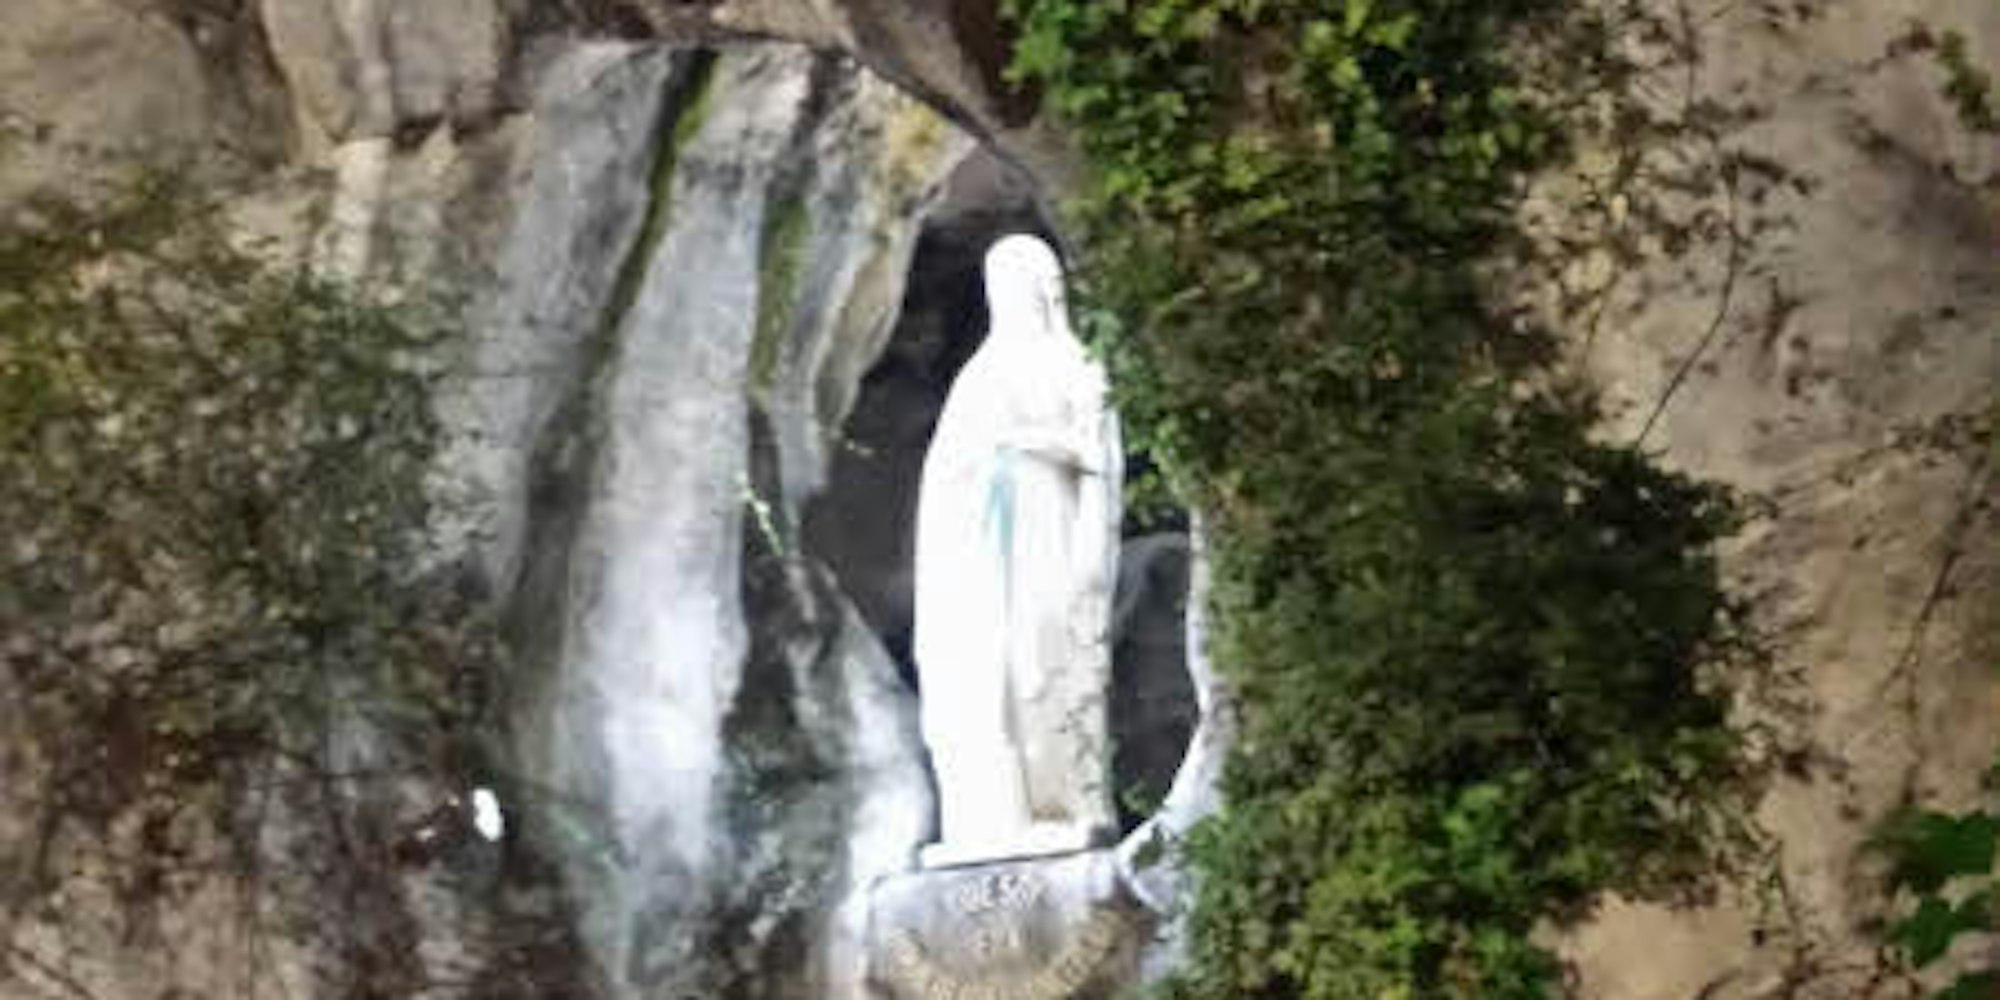 Jährlich pilgern viele Tausende Menschen nach Lourdes, um die Grotte der Heiligen Jungfrau Maria zu besuchen, die dort erschienen sein soll.